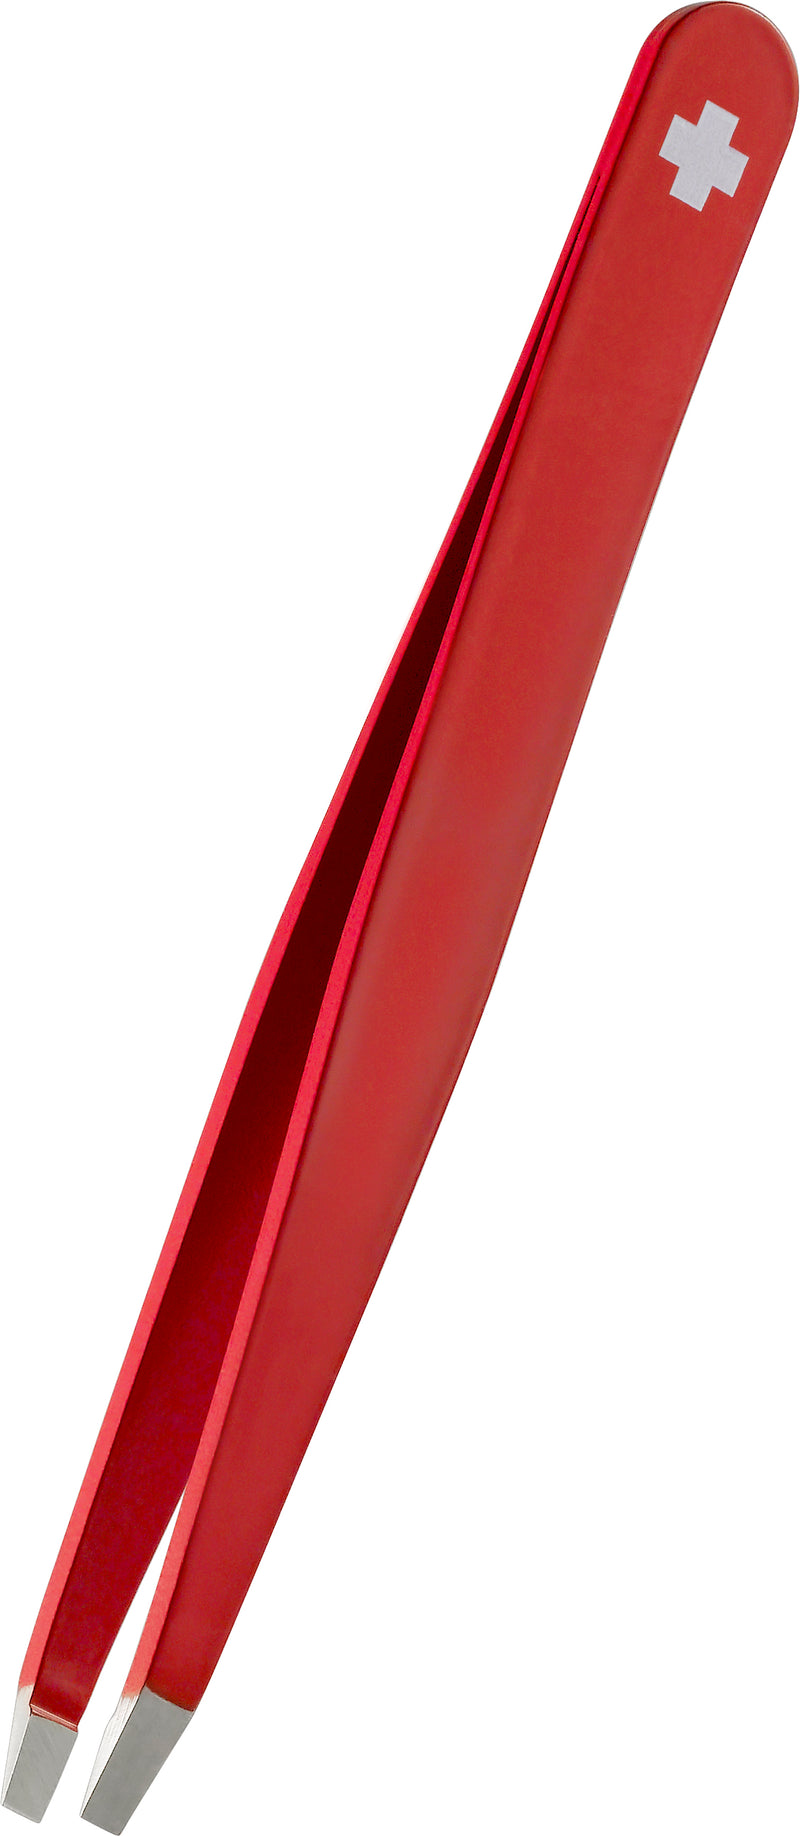 RUBIS Pinzette Schweizerkreuz gerade, rot, Inox